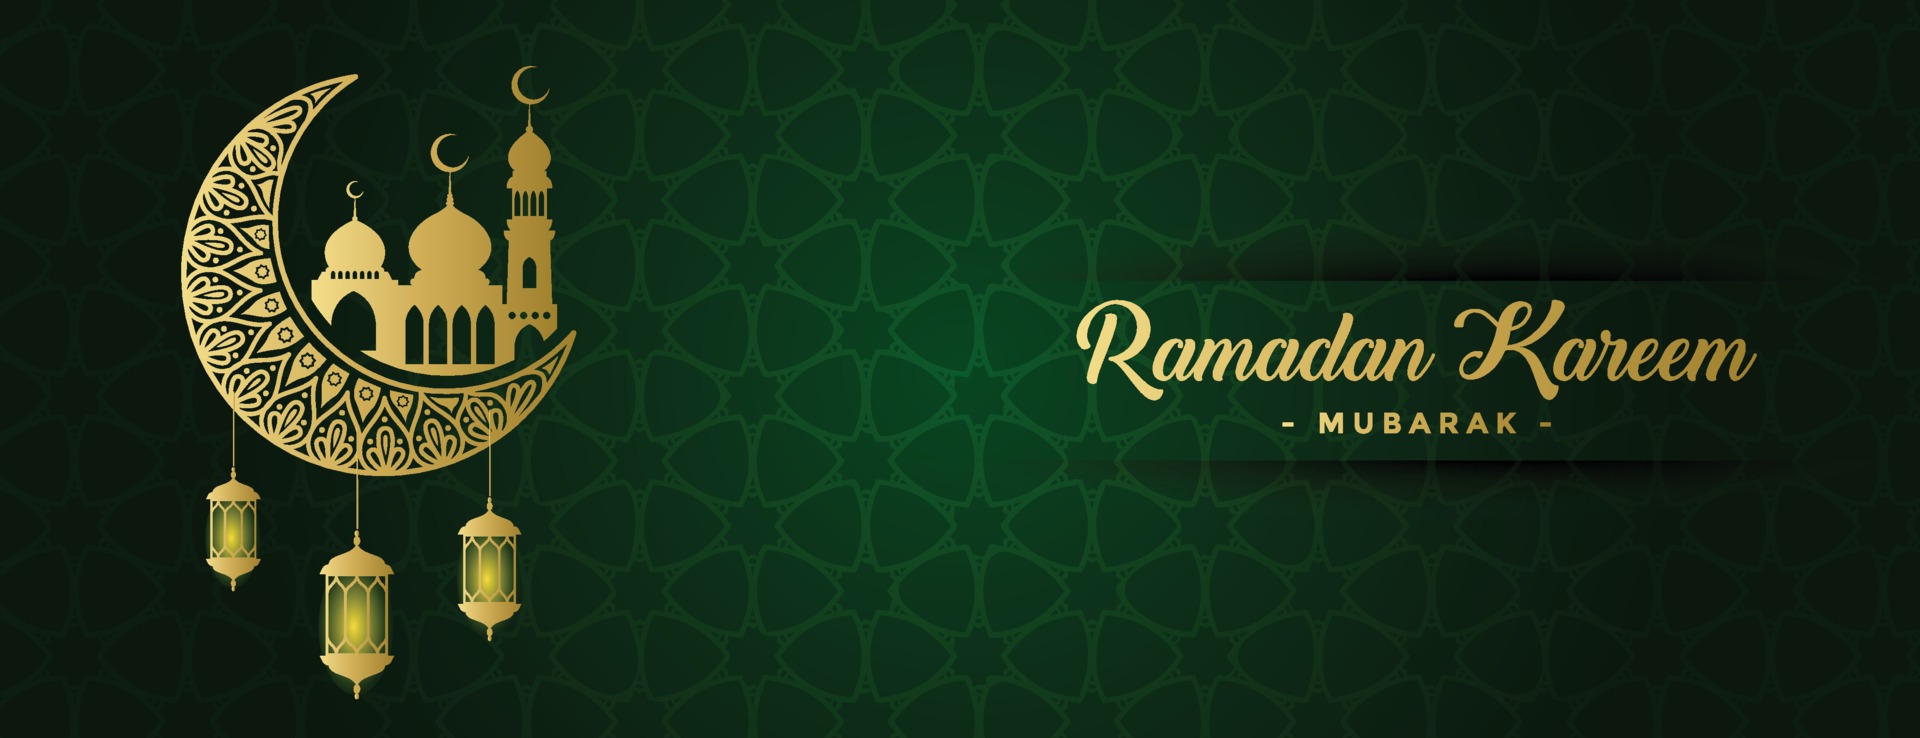 Nền đen kết hợp với màu xanh lá cây tươi tắn làm nổi bật nên hình ảnh nền Ramadan Green Background của chúng tôi. Hãy đến với chúng tôi để cảm nhận được sự dịu mát và tinh tế của thiết kế vector art này.